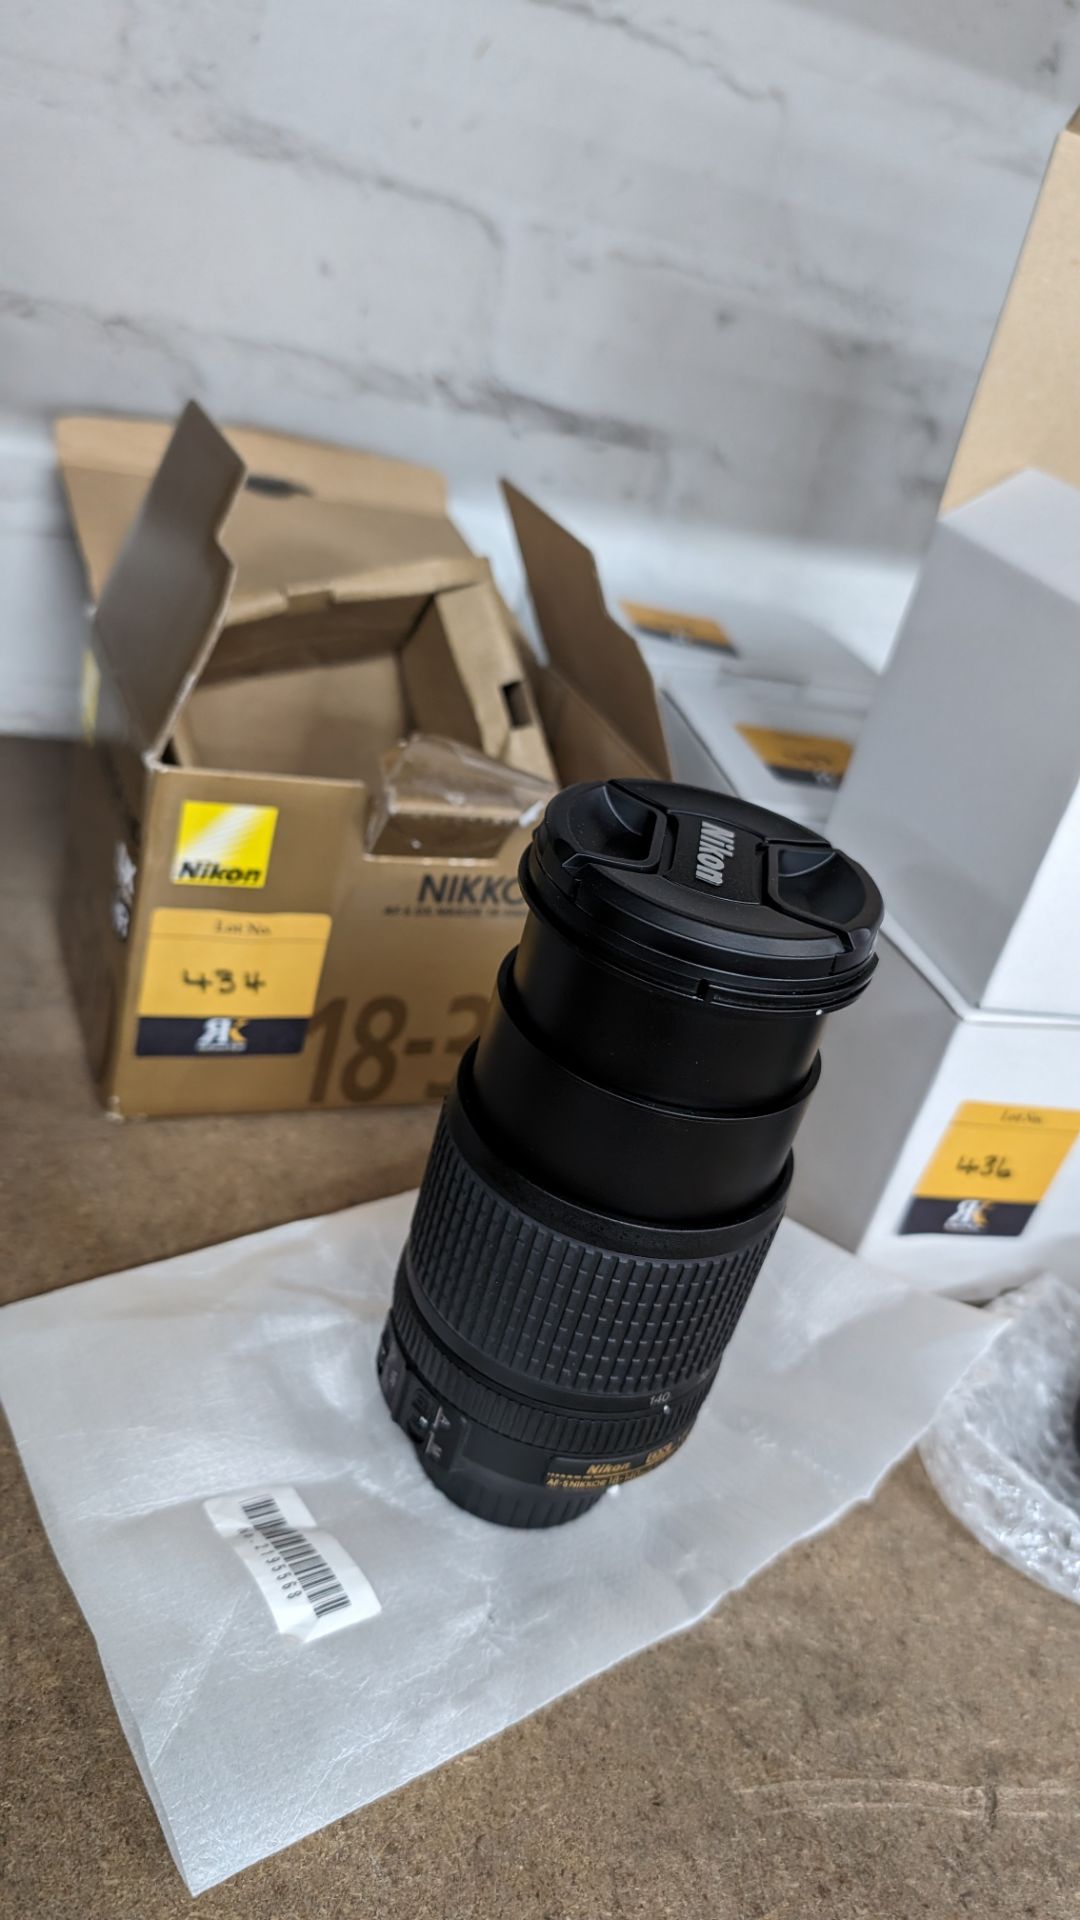 Nikon Nikkor lens AF-S DX Nikkor 18-140mm 1:3.5-5.6G ED VR